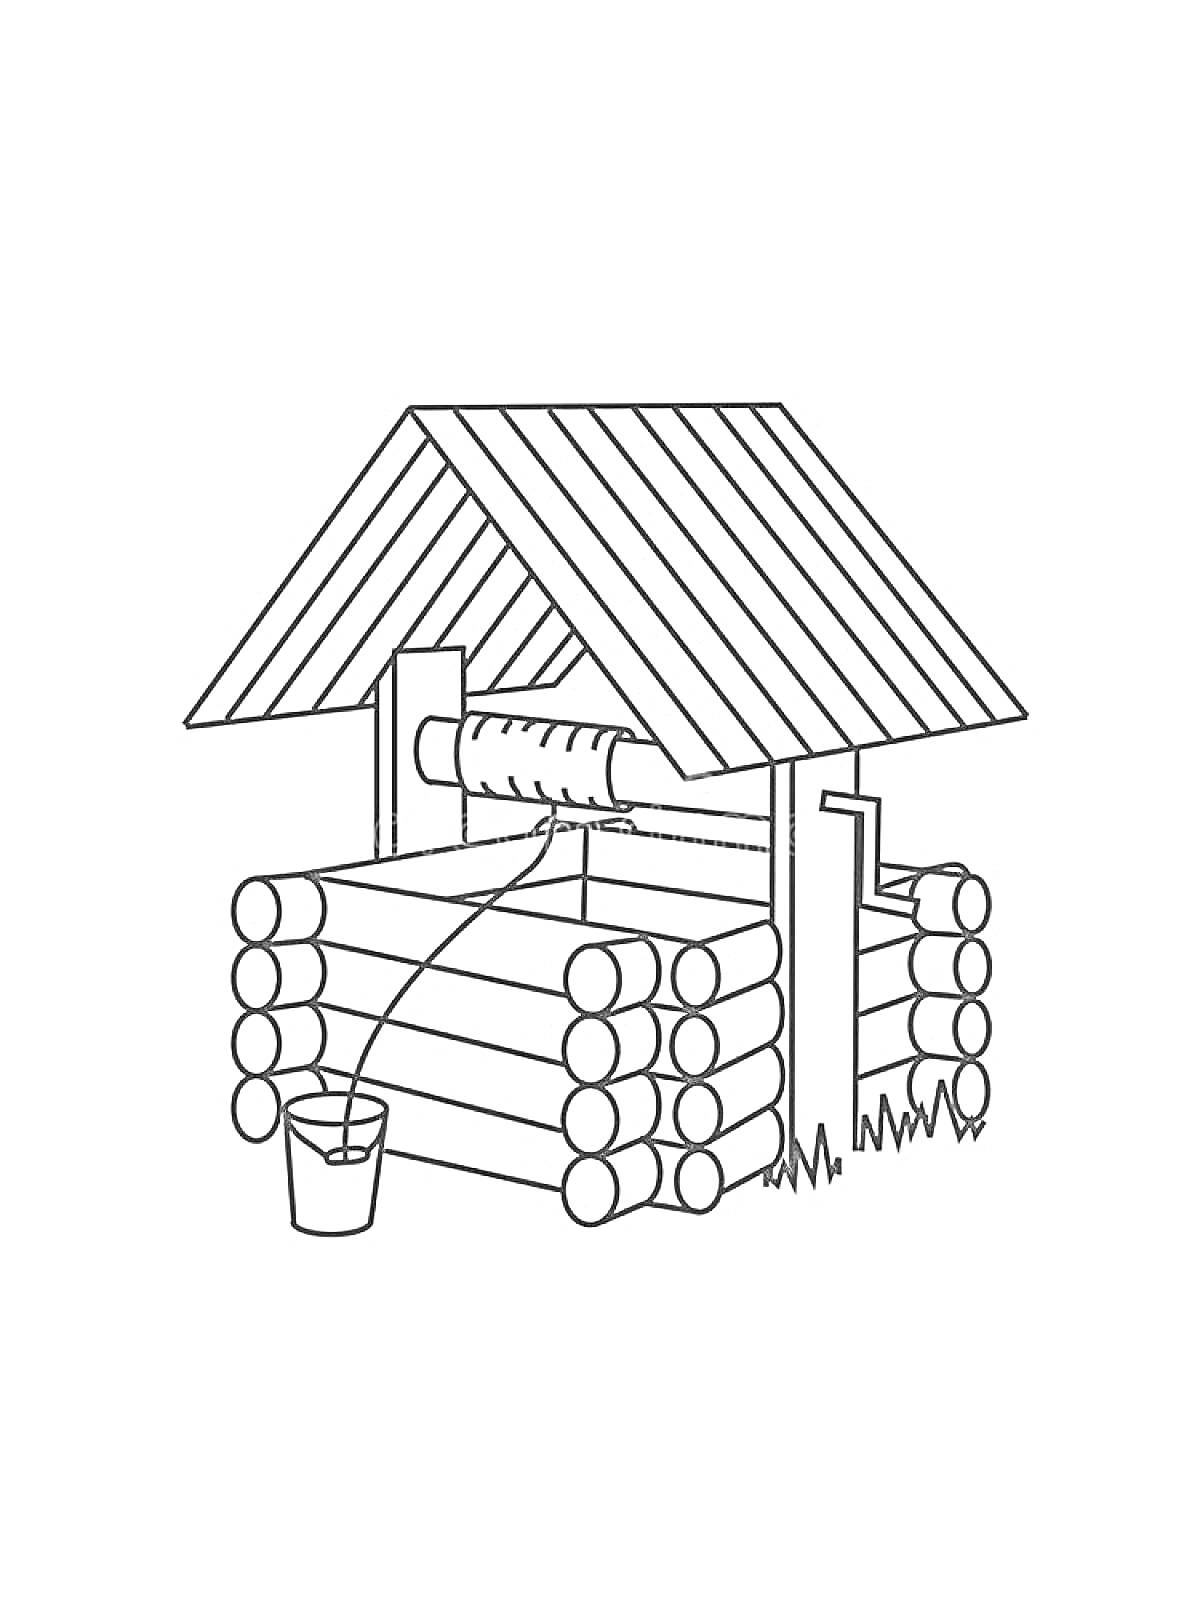 Раскраска Колодец с деревянной крышей, бревенчатым основанием, ведром и верёвкой